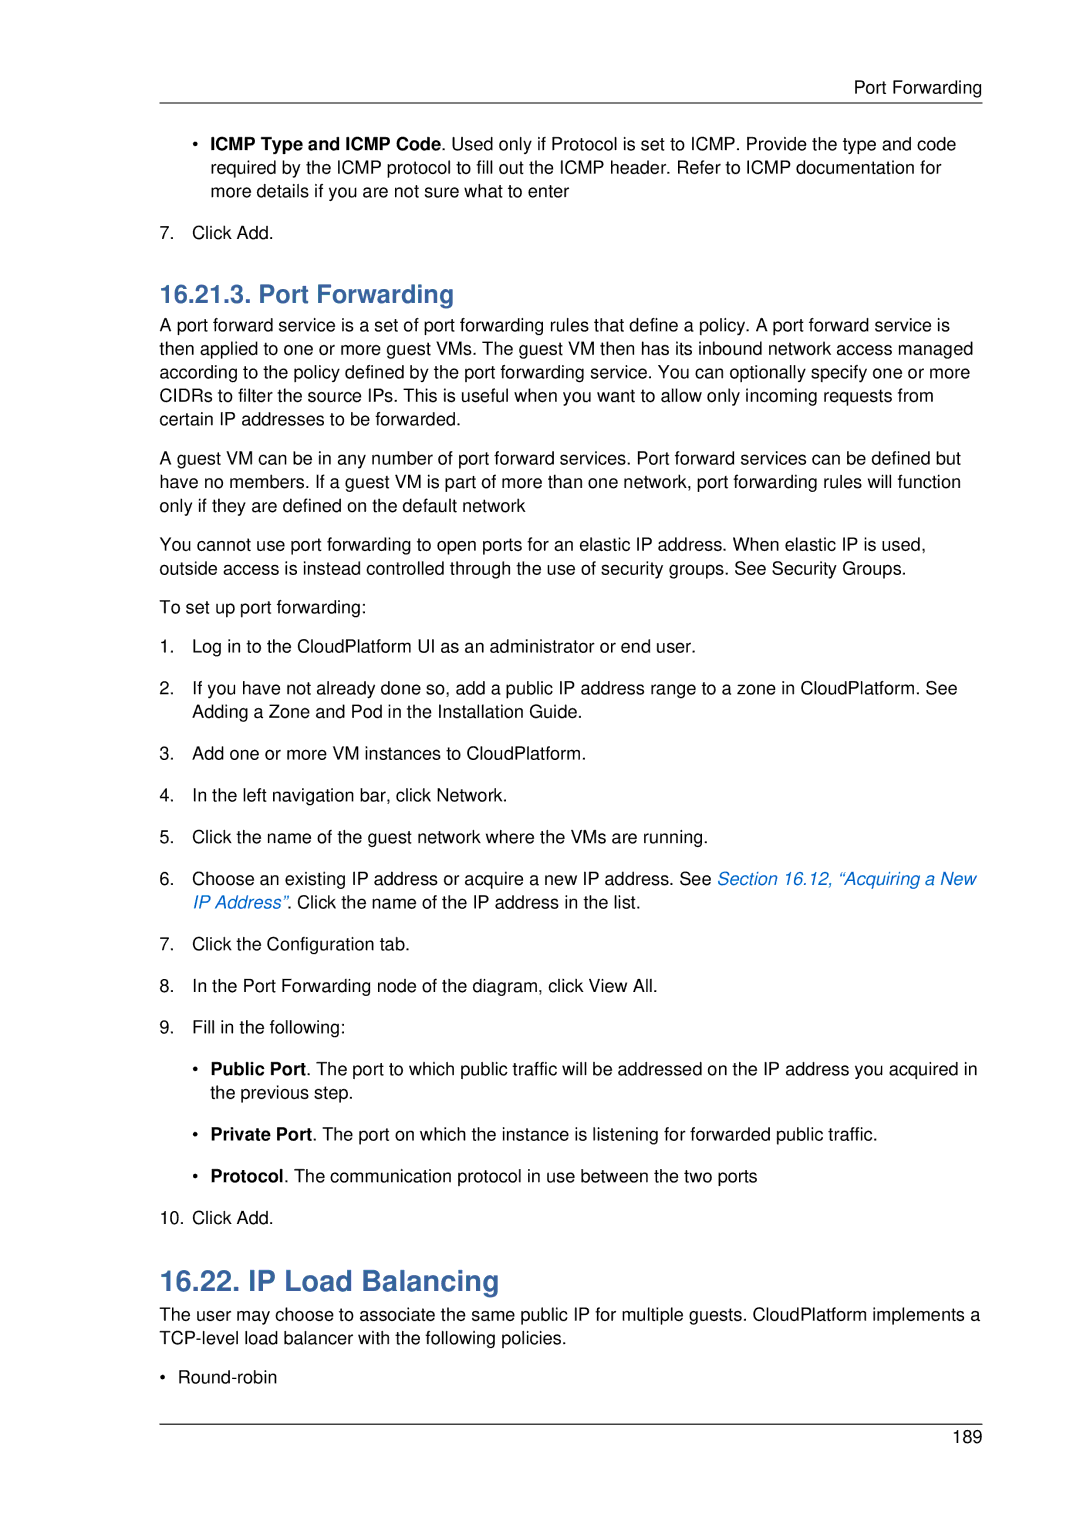 Citrix Systems 4.2 manual IP Load Balancing, Port Forwarding 